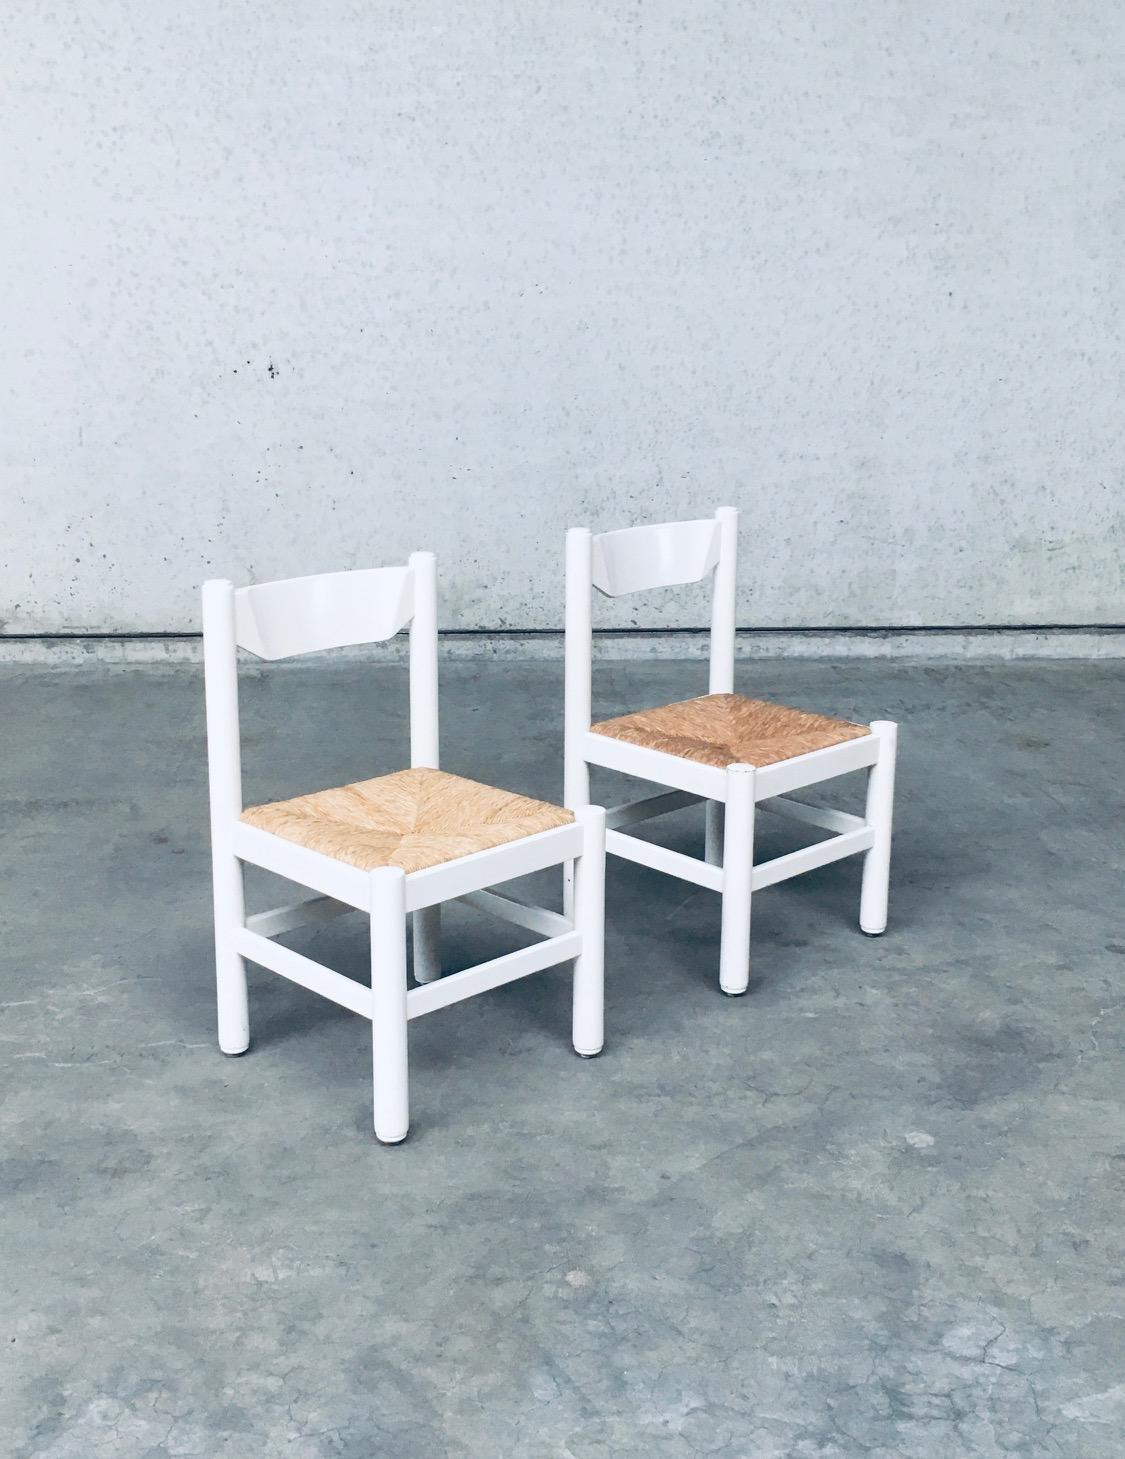 Vintage Midcentury Modern Italian Design 'Carimate' Model Side Chair set. Fabriqué en Italie, période des années 1970. Chaises modèles Carimate à la manière de Vico Magistretti pour Cassina. Piétement en hêtre laqué blanc et assise en jonc pour